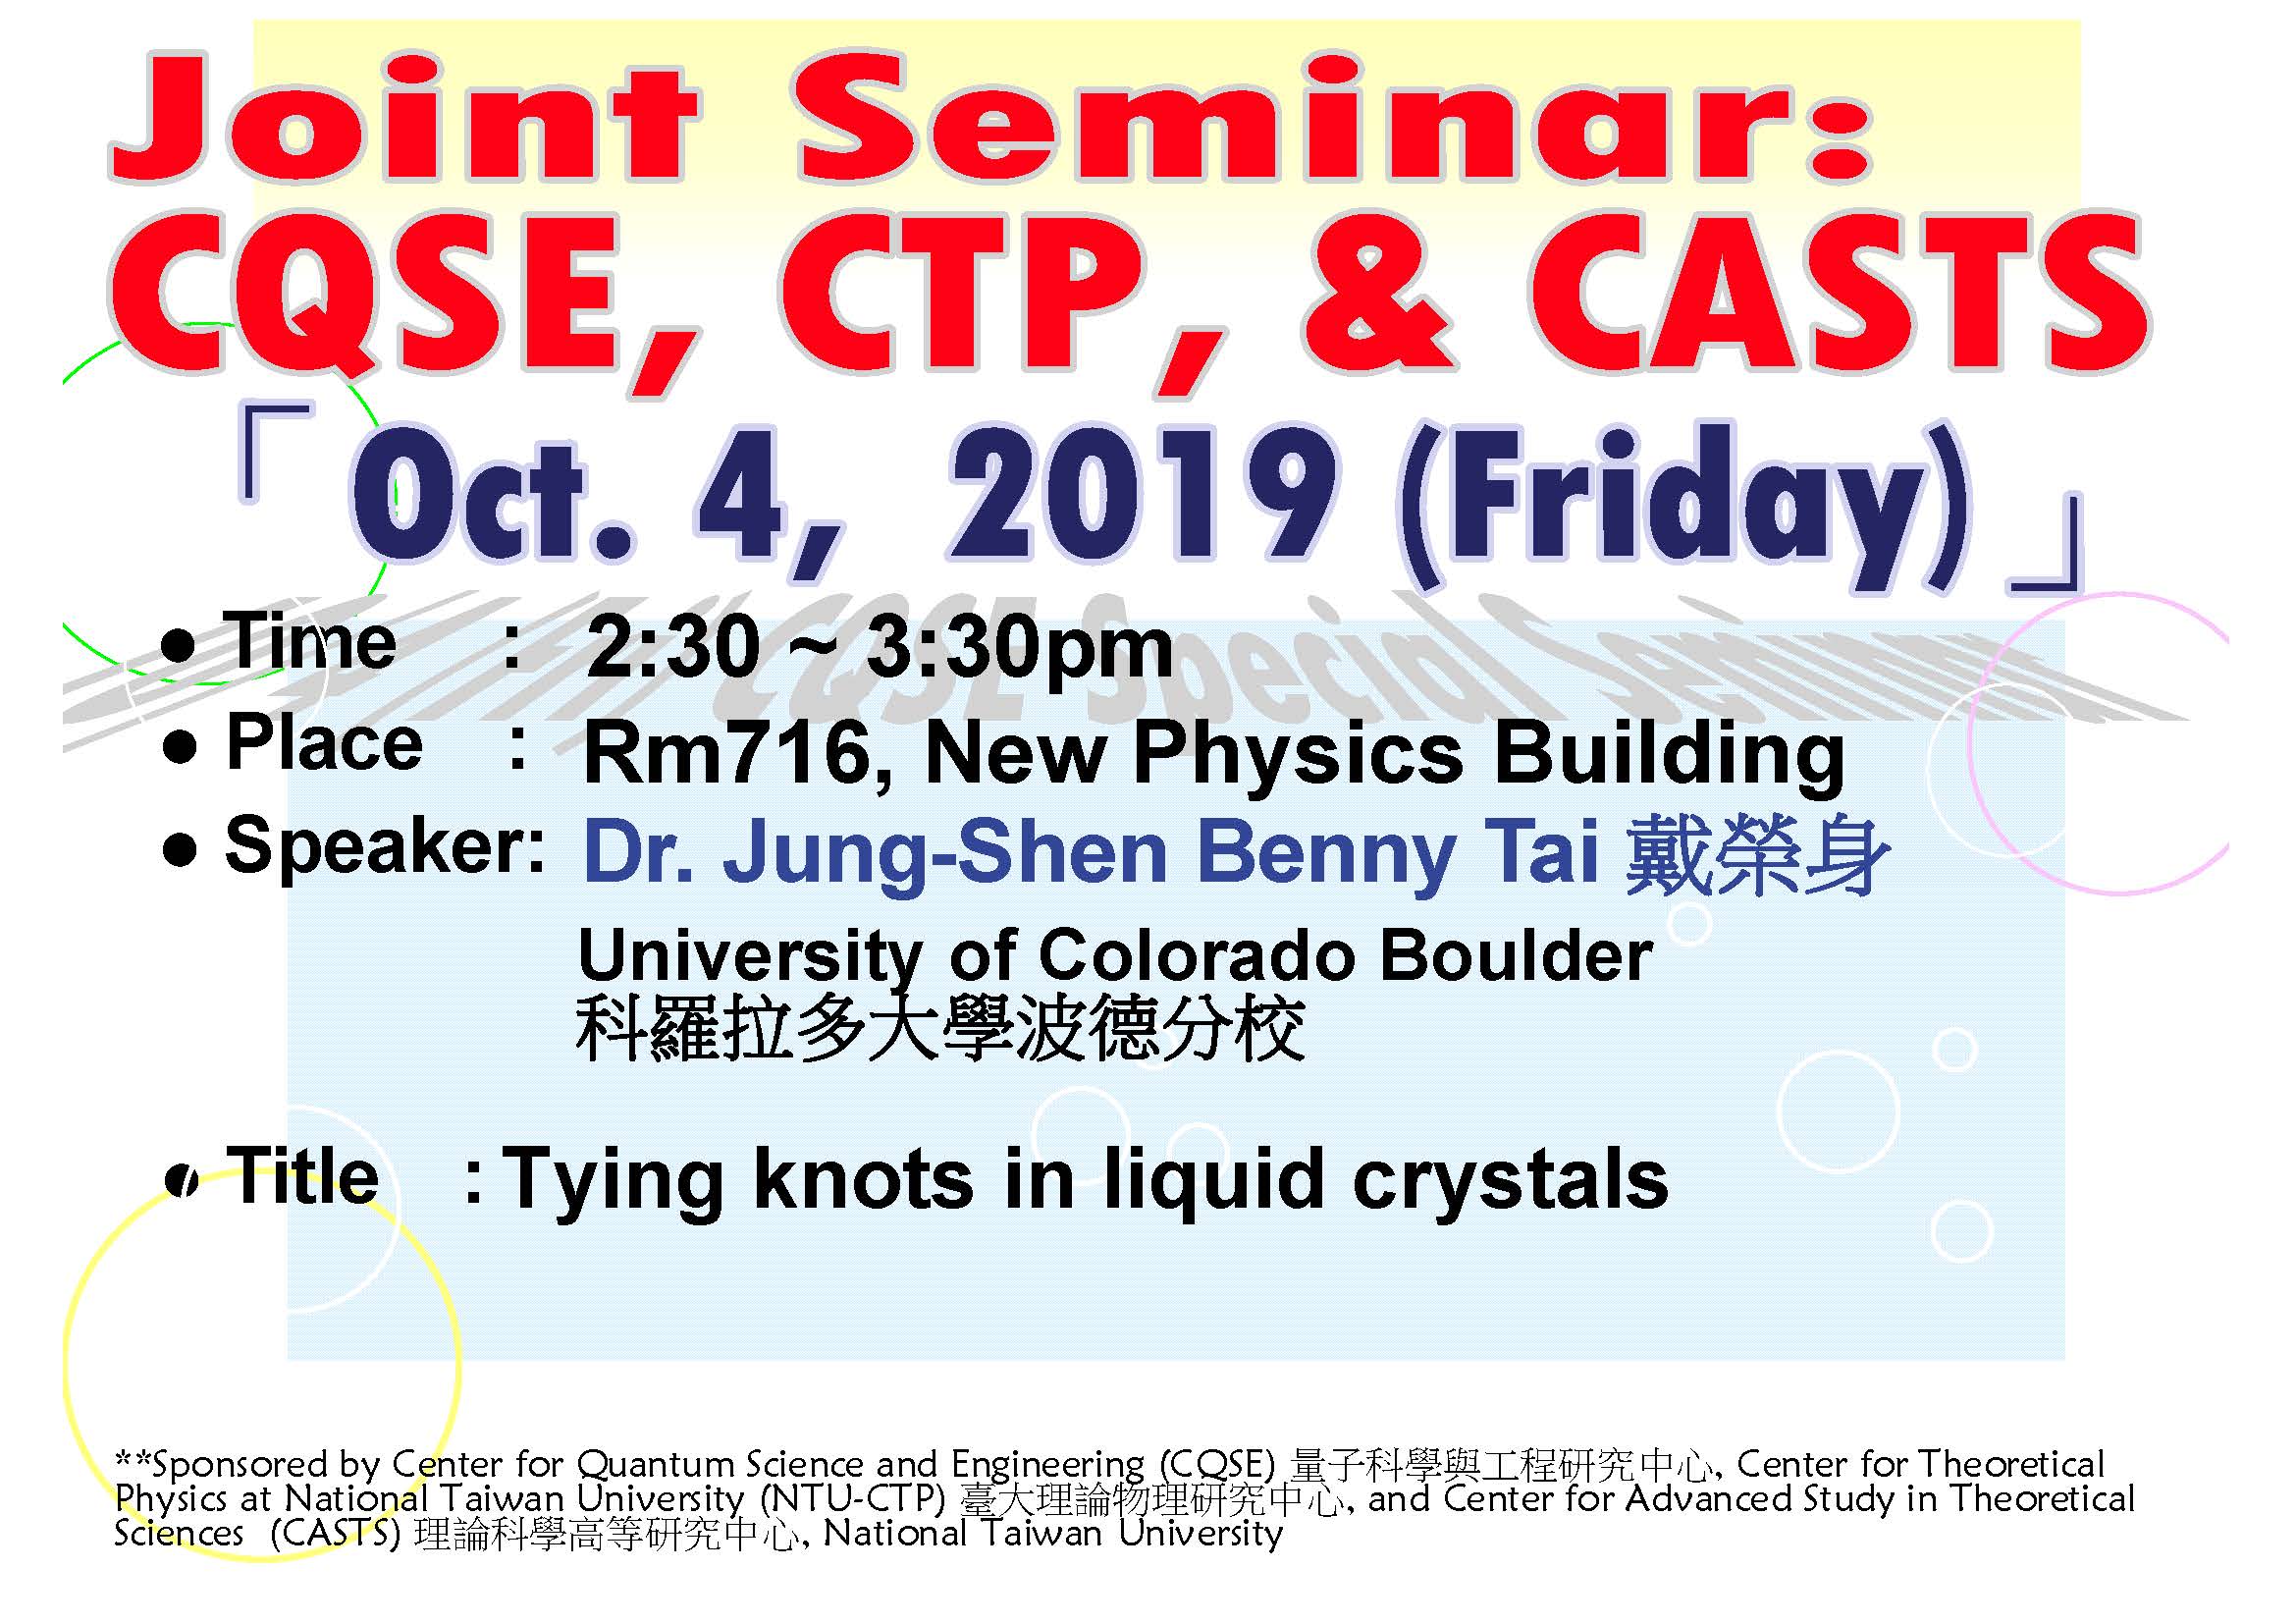 Joint Seminar – CQSE, CTP, & CASTS